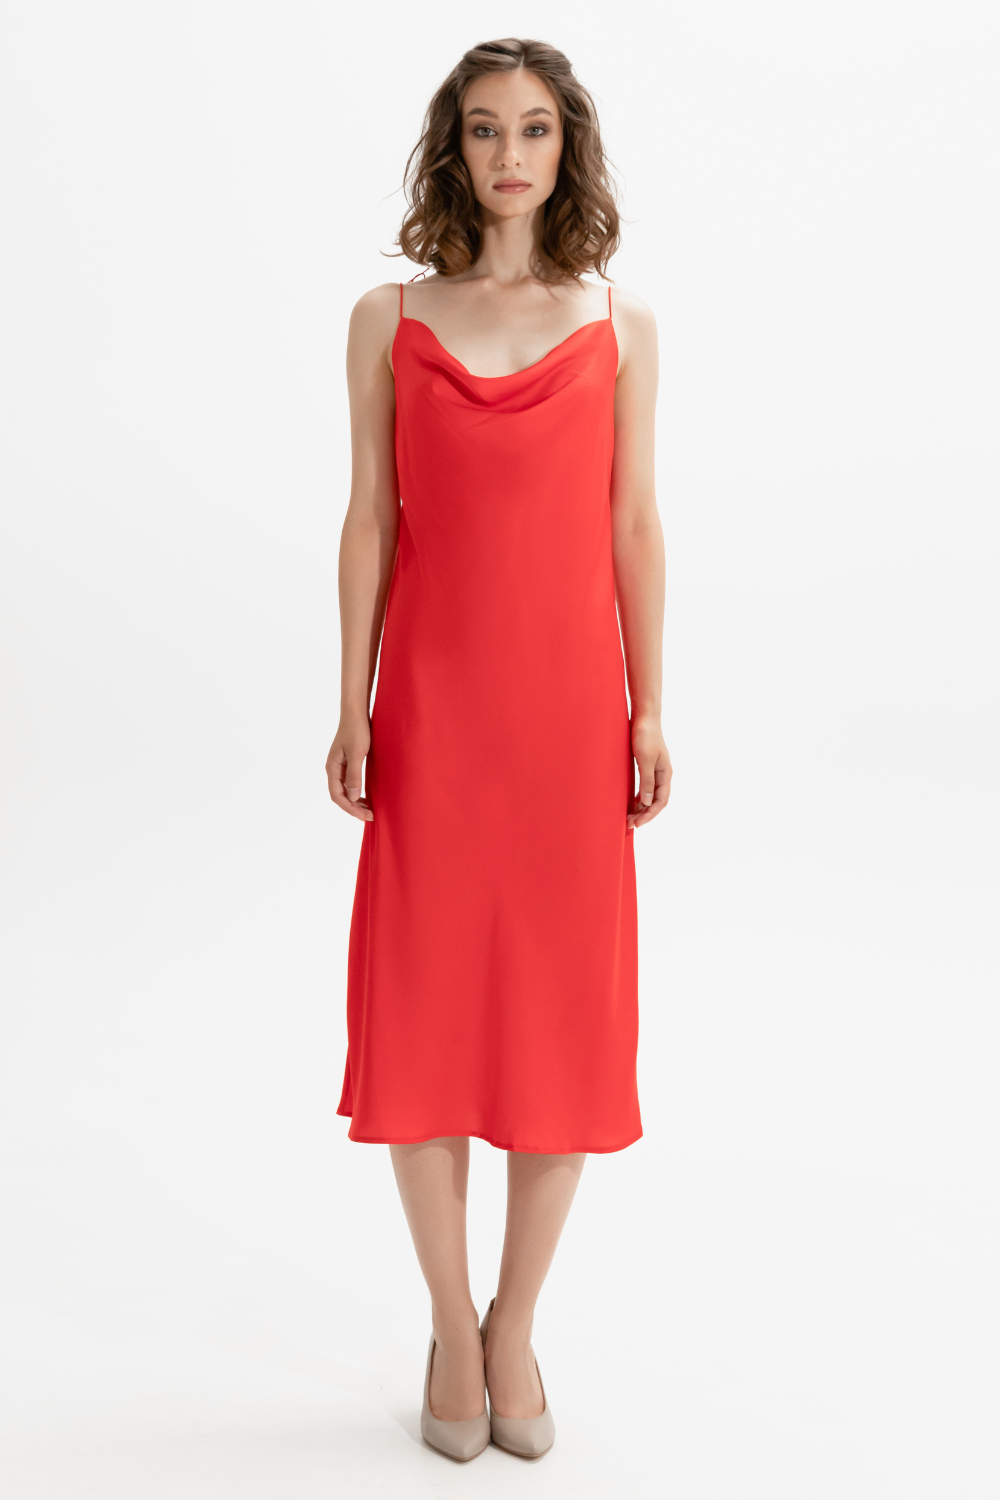 Red dress MINT, (Mint), 643